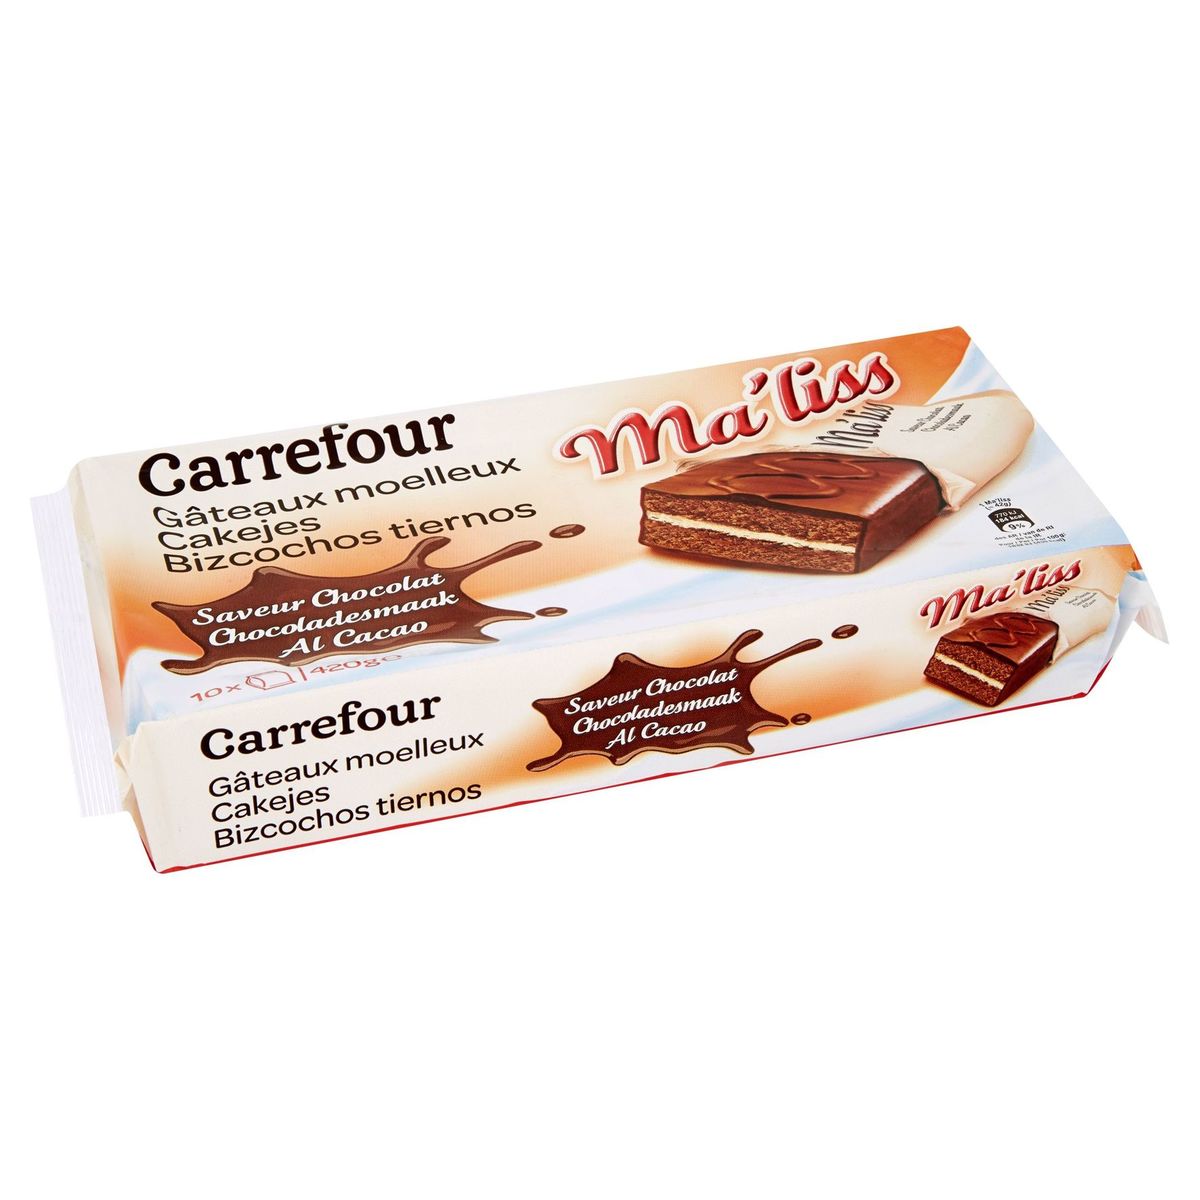 Carrefour Ma'liss Gâteaux Moelleux Saveur Chocolat 10 x 42 g